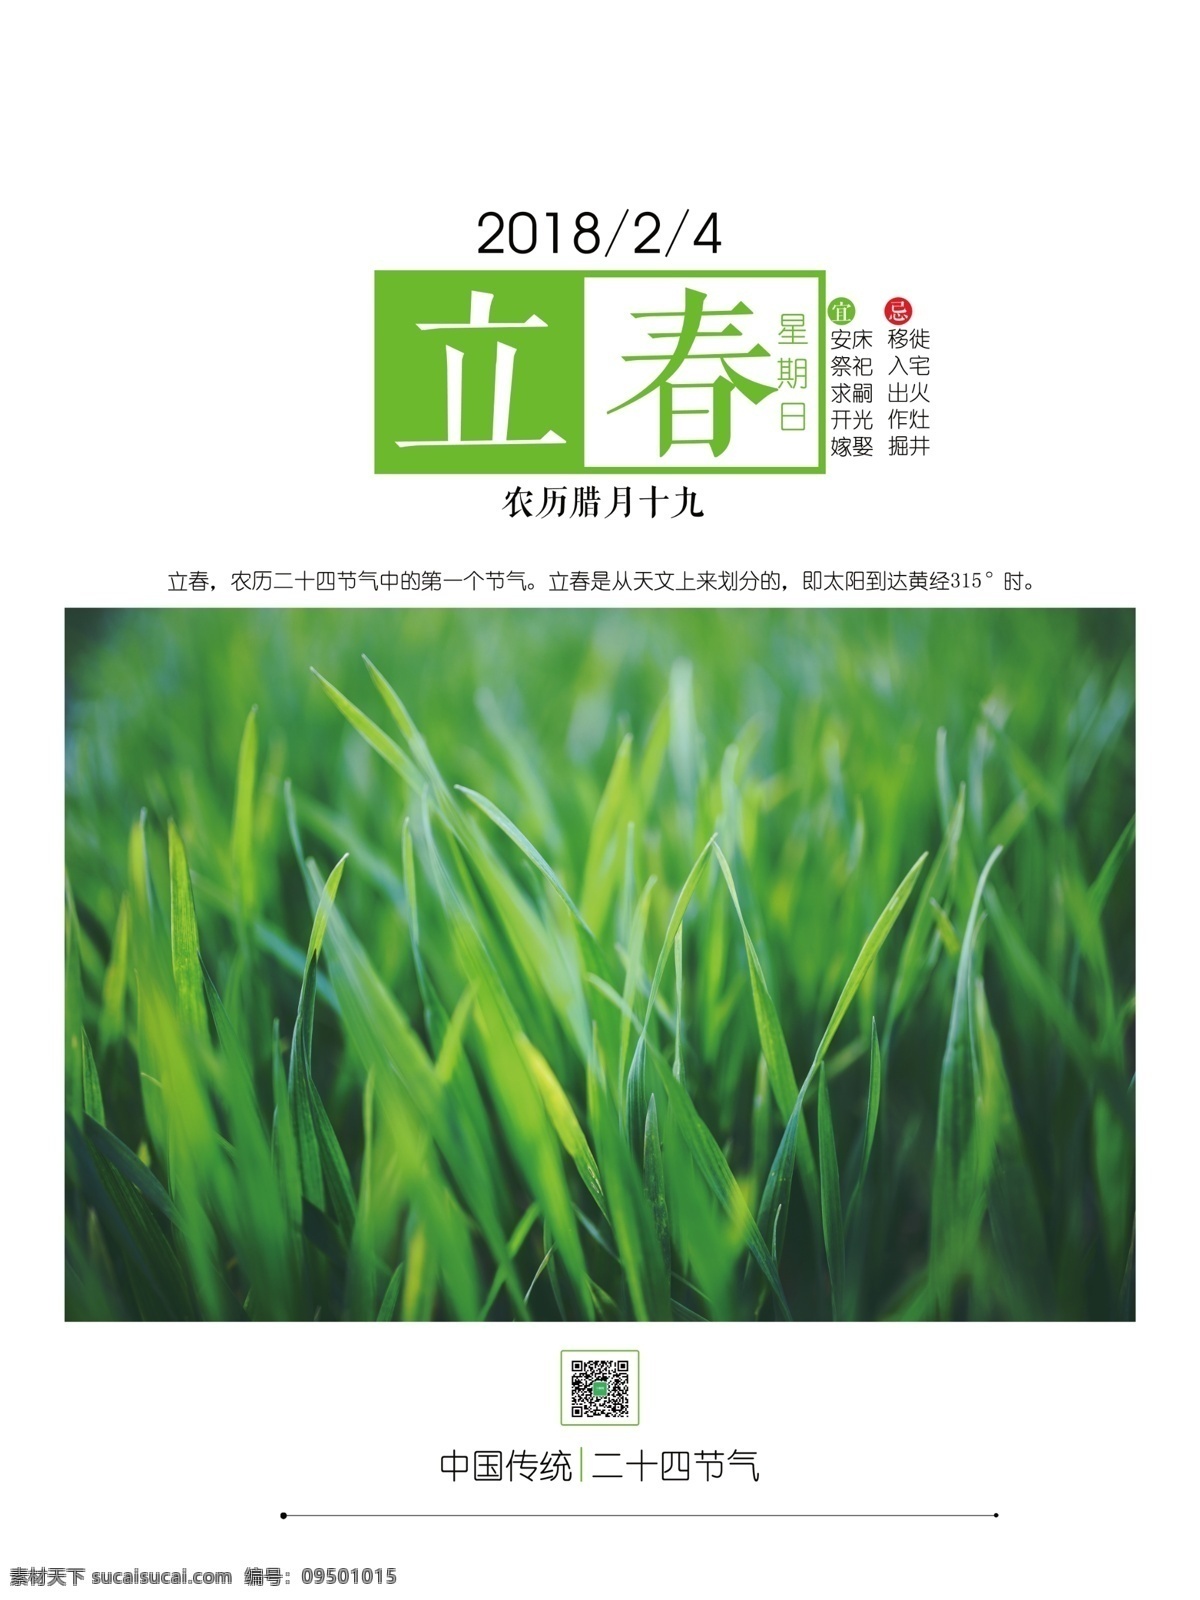 立春 绿色 草地 简约 宣传日 签 源文件 二十四节气 简洁 日签 2018 年